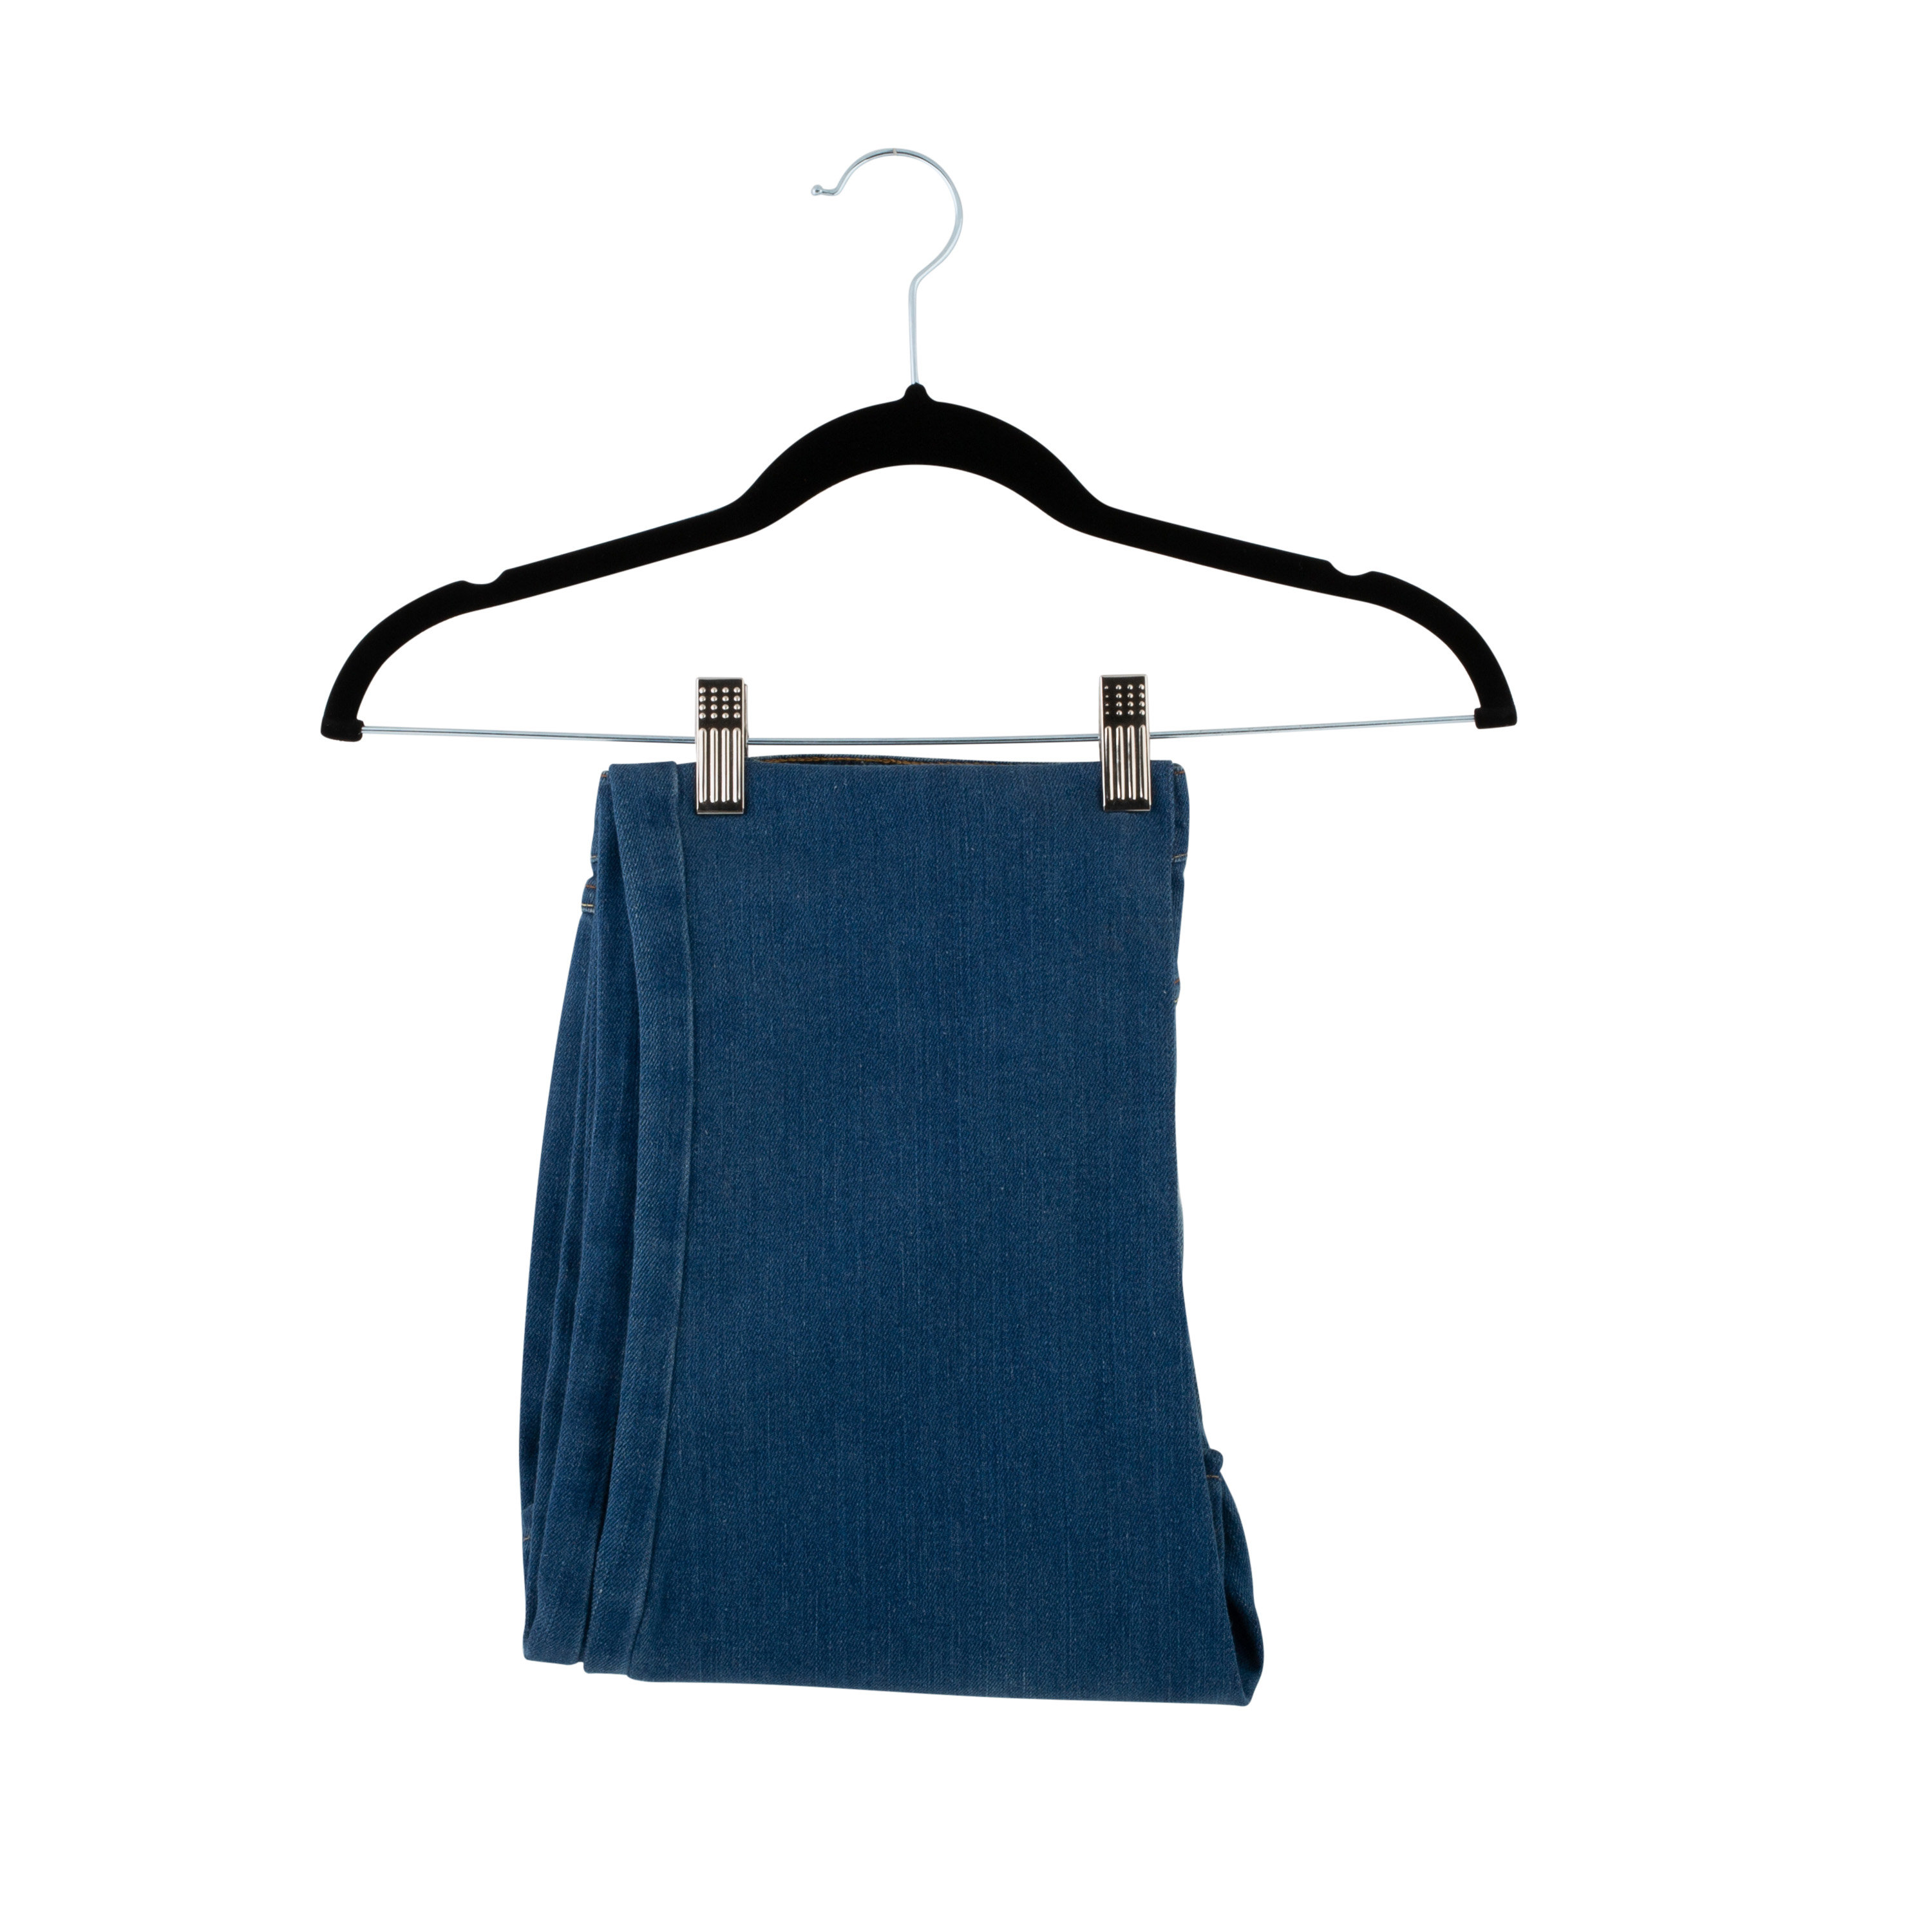 https://assets.wfcdn.com/im/49056806/compr-r85/2188/218858859/kieva-velvet-non-slip-hangers-with-clips-for-dressshirtsweater.jpg